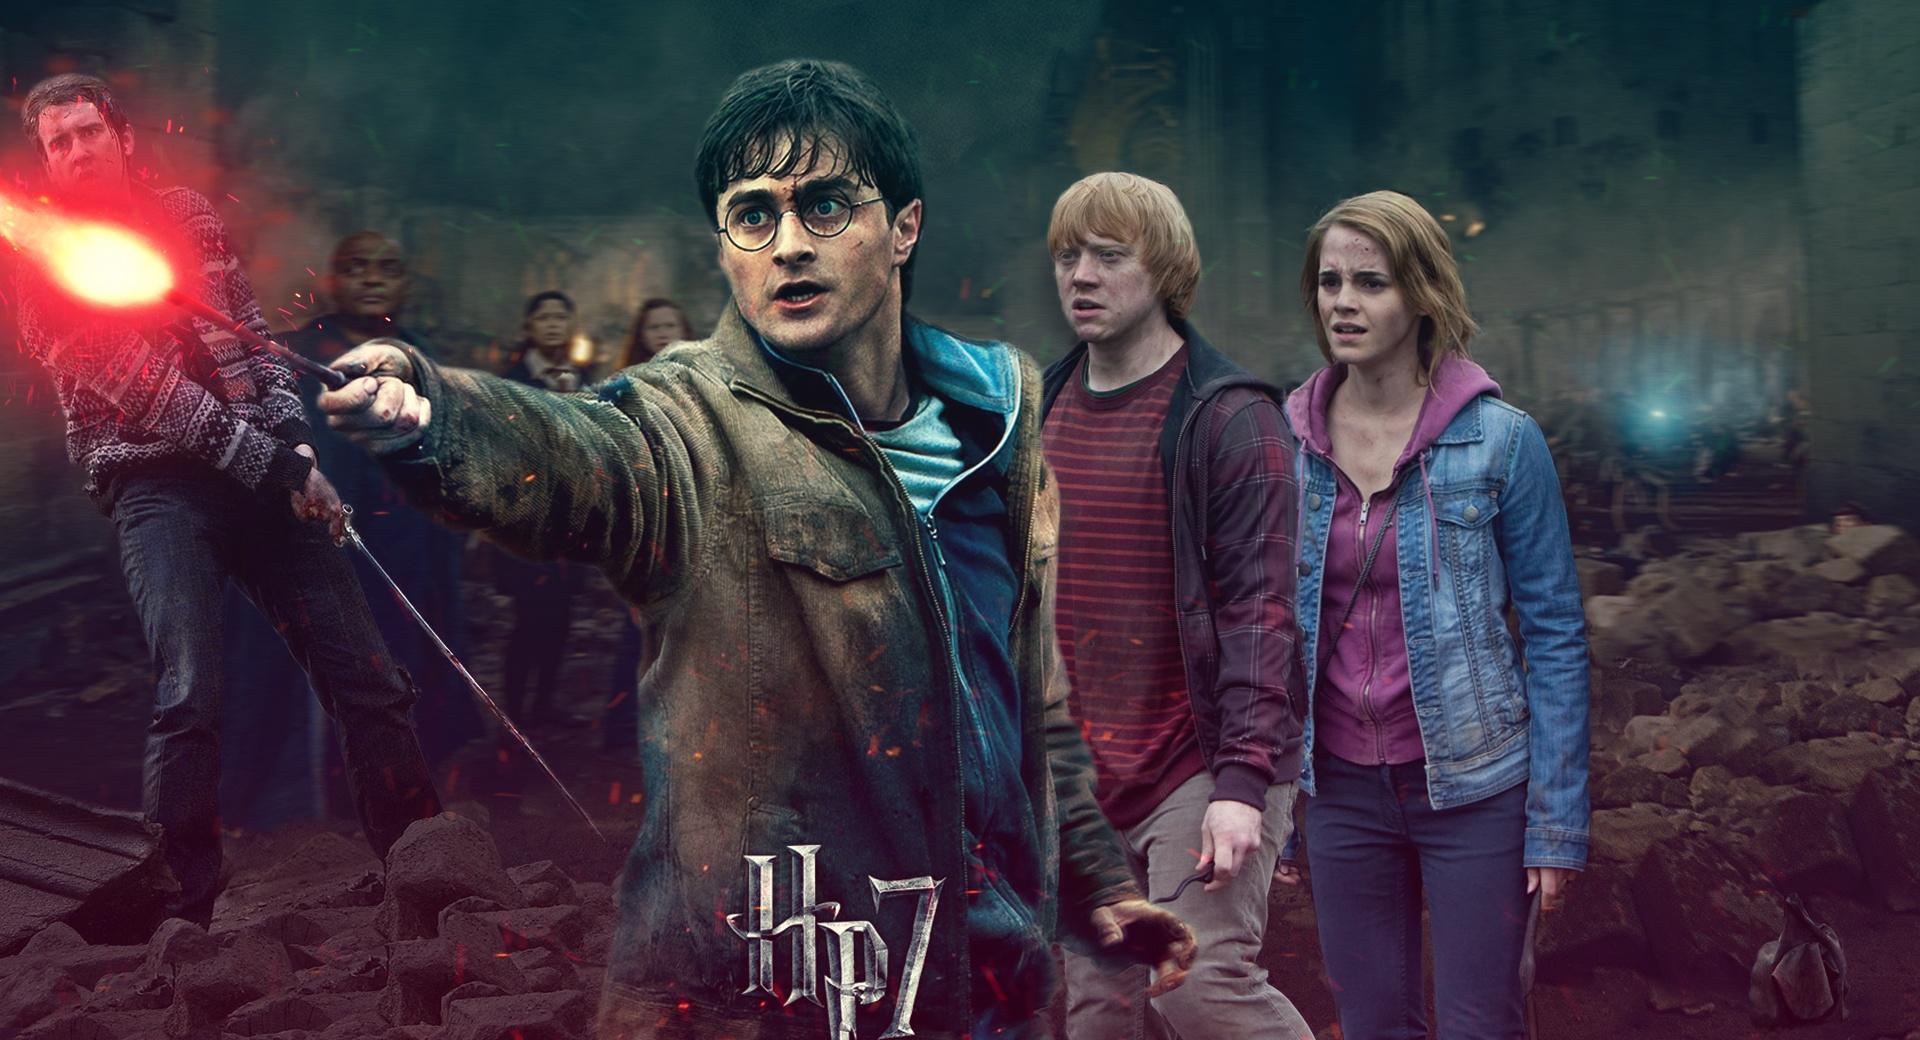 Harry Potter - Battle of Hogwarts - Harrys Side wallpapers HD quality